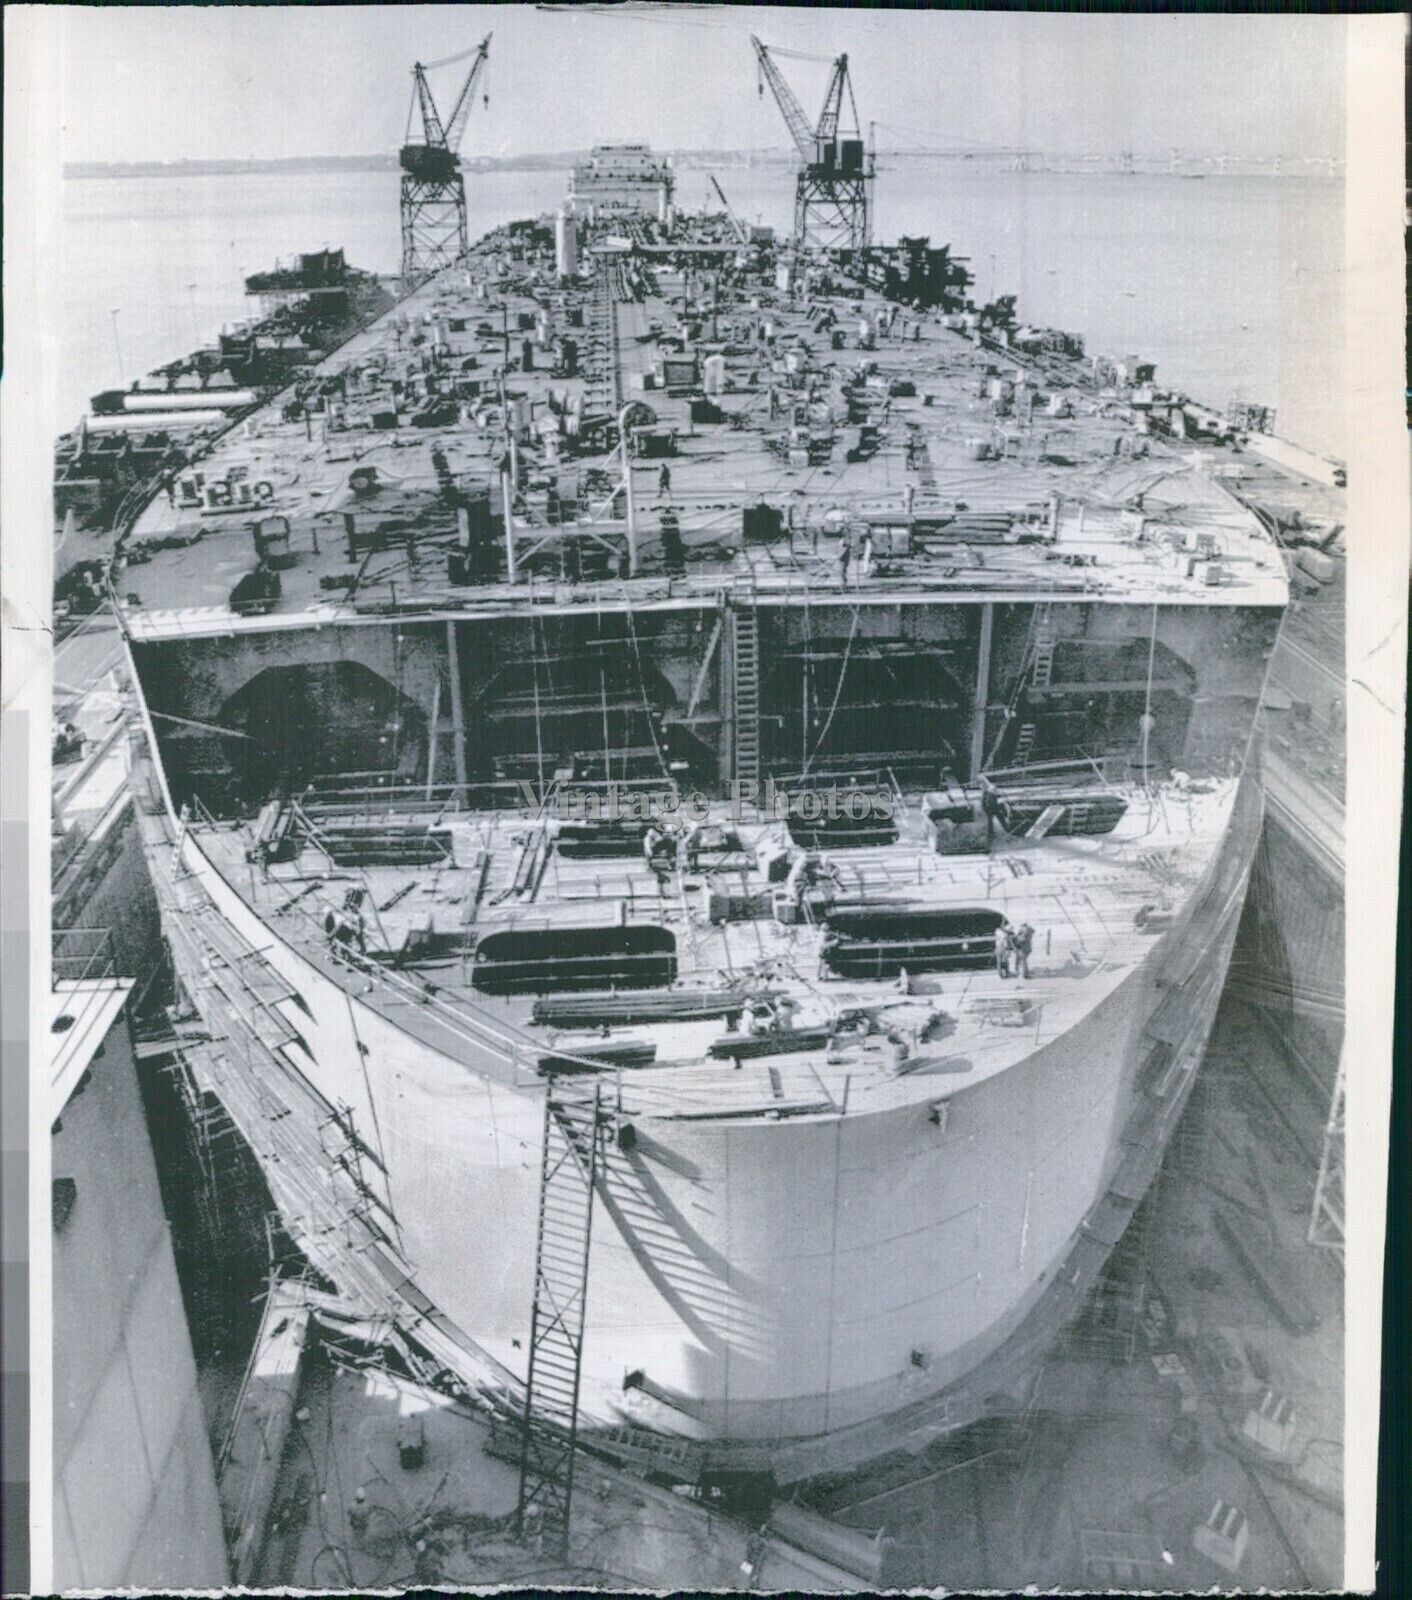 1974 Ultra Large Crude Carrier Super Tanker Shipyard Transportation 7X9 Photo